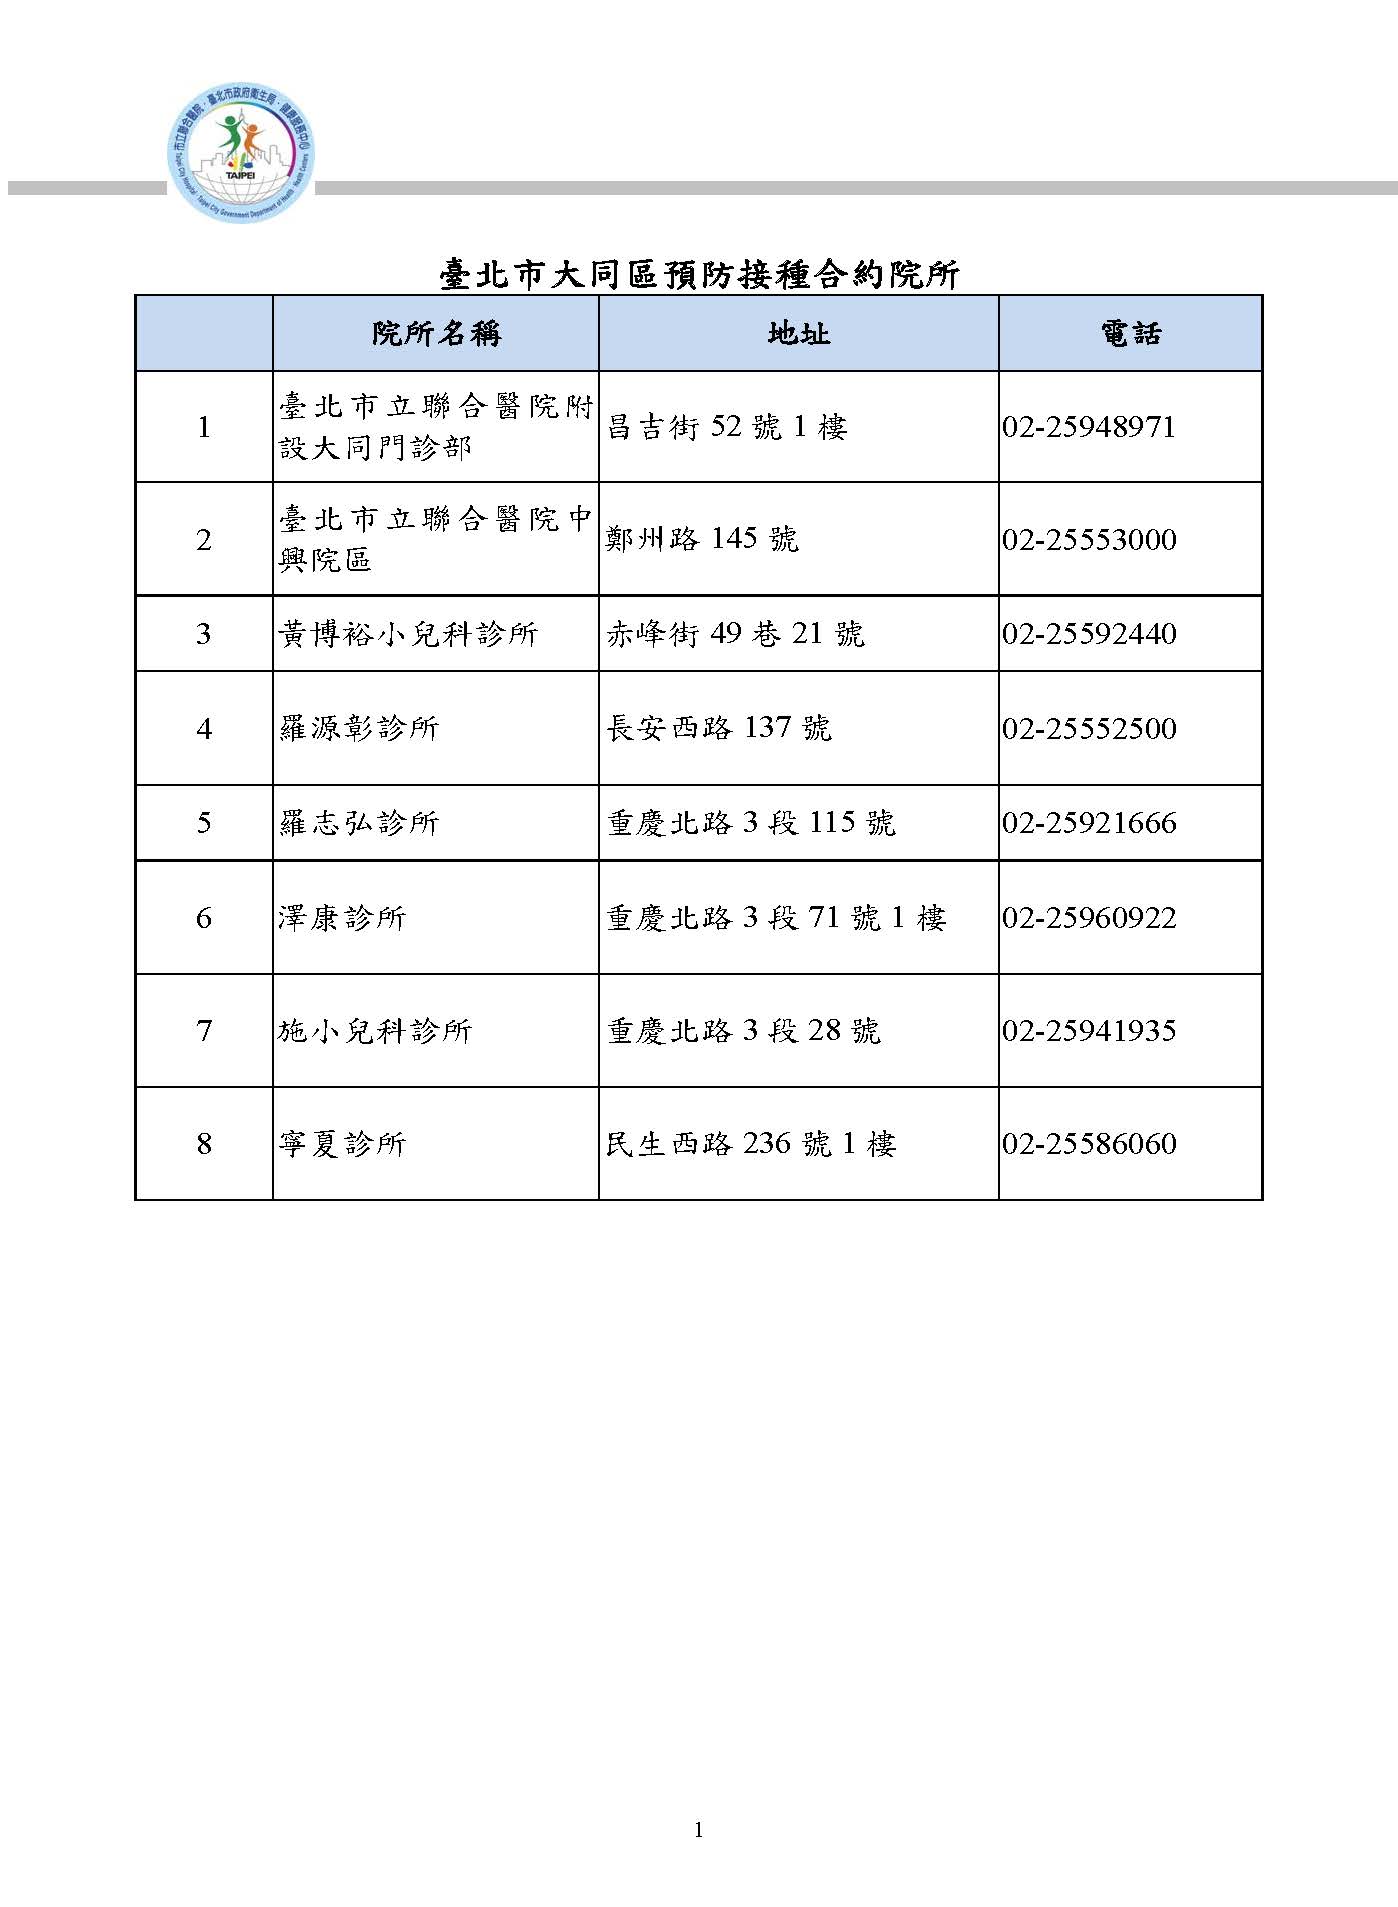 臺北市大同區預防接種合約院所一覽表